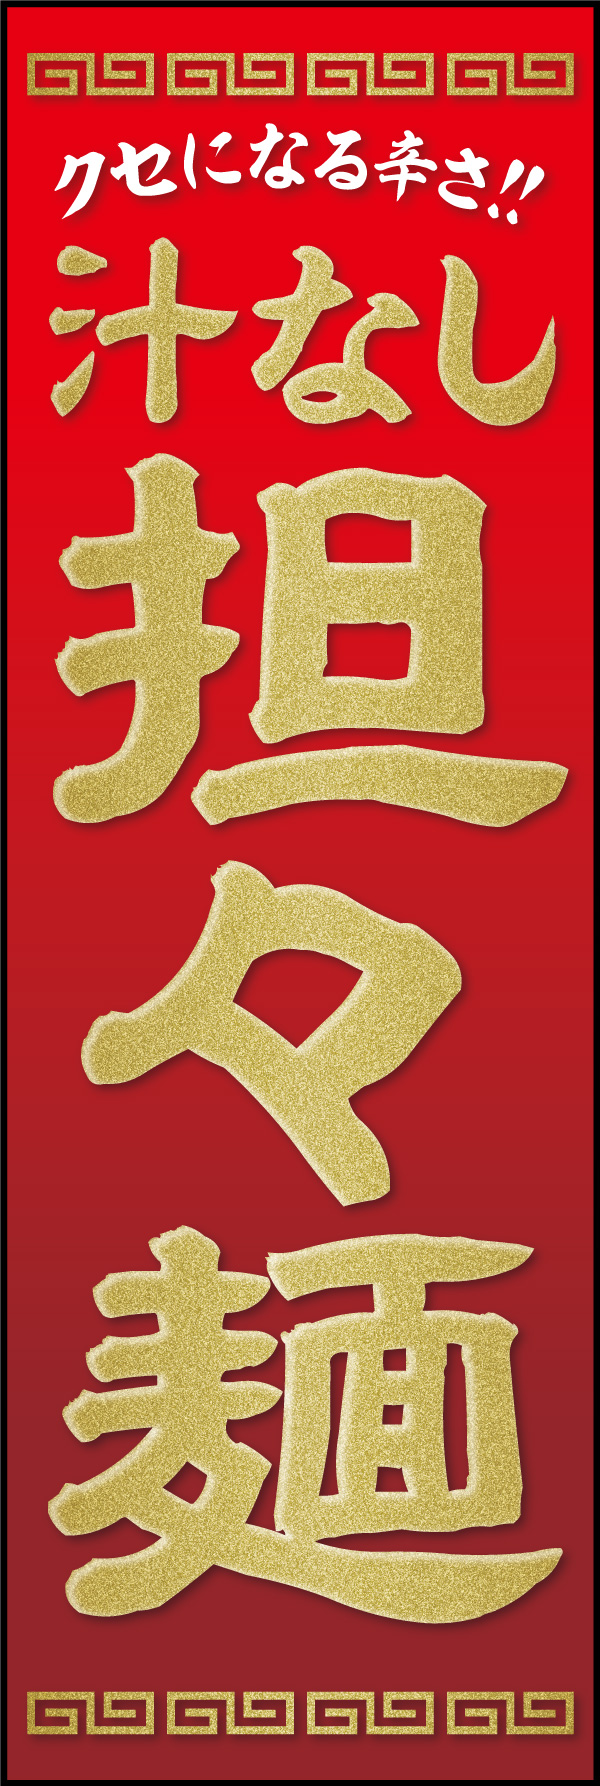 担々麺 07「汁なし担々麺」ののぼりです。痺れる辛さのイメージで赤をベースに、品のある中華料理店の雰囲気でデザインしました。(Y.M) 